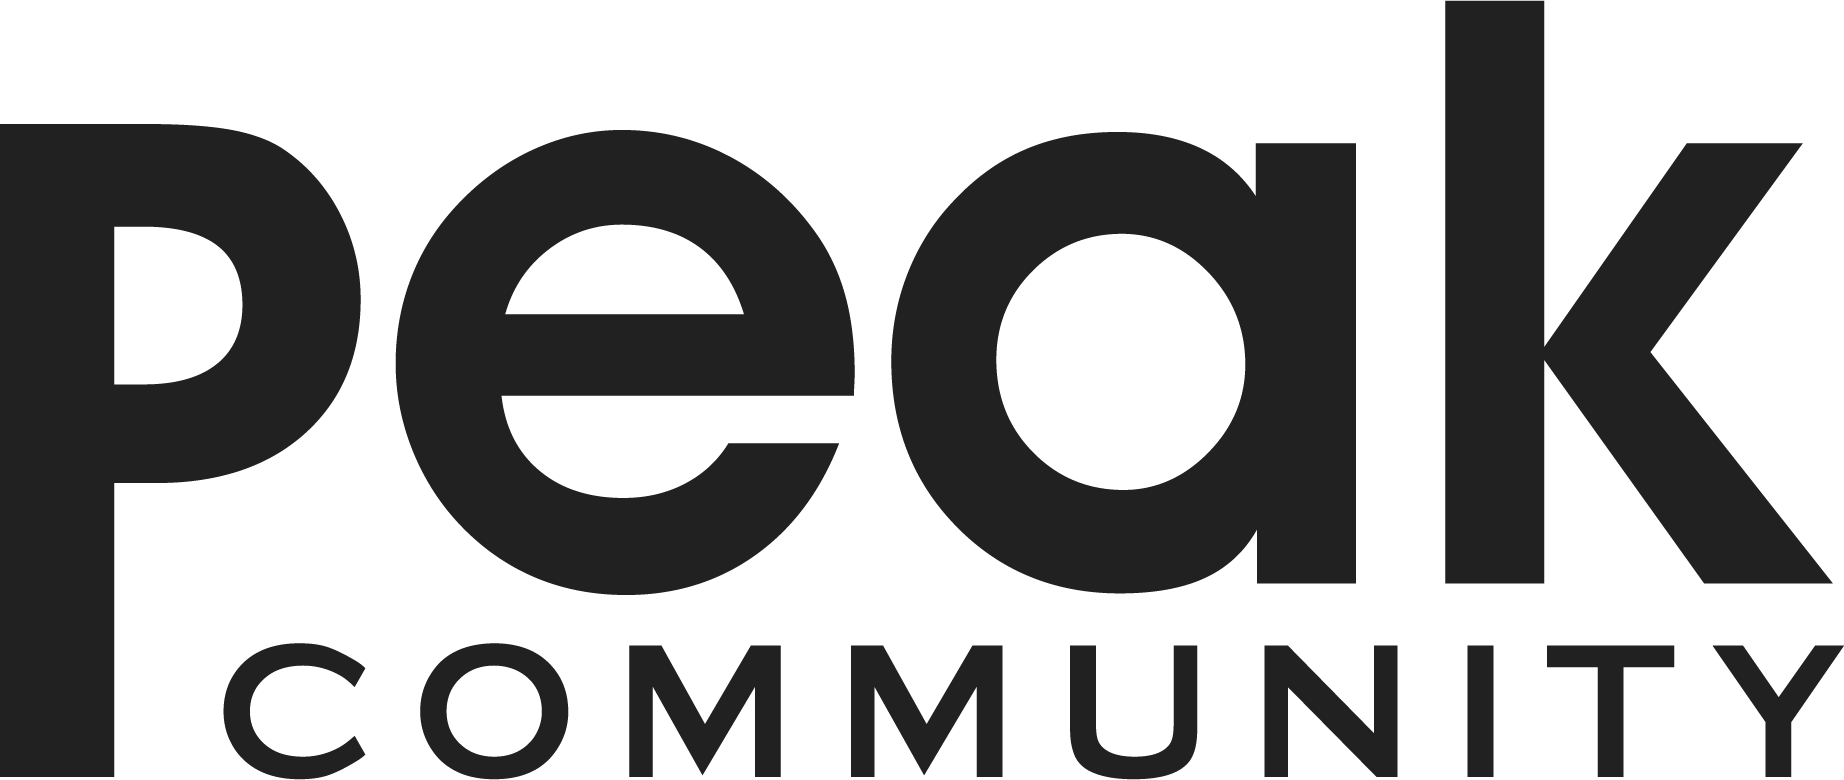 Peak Community